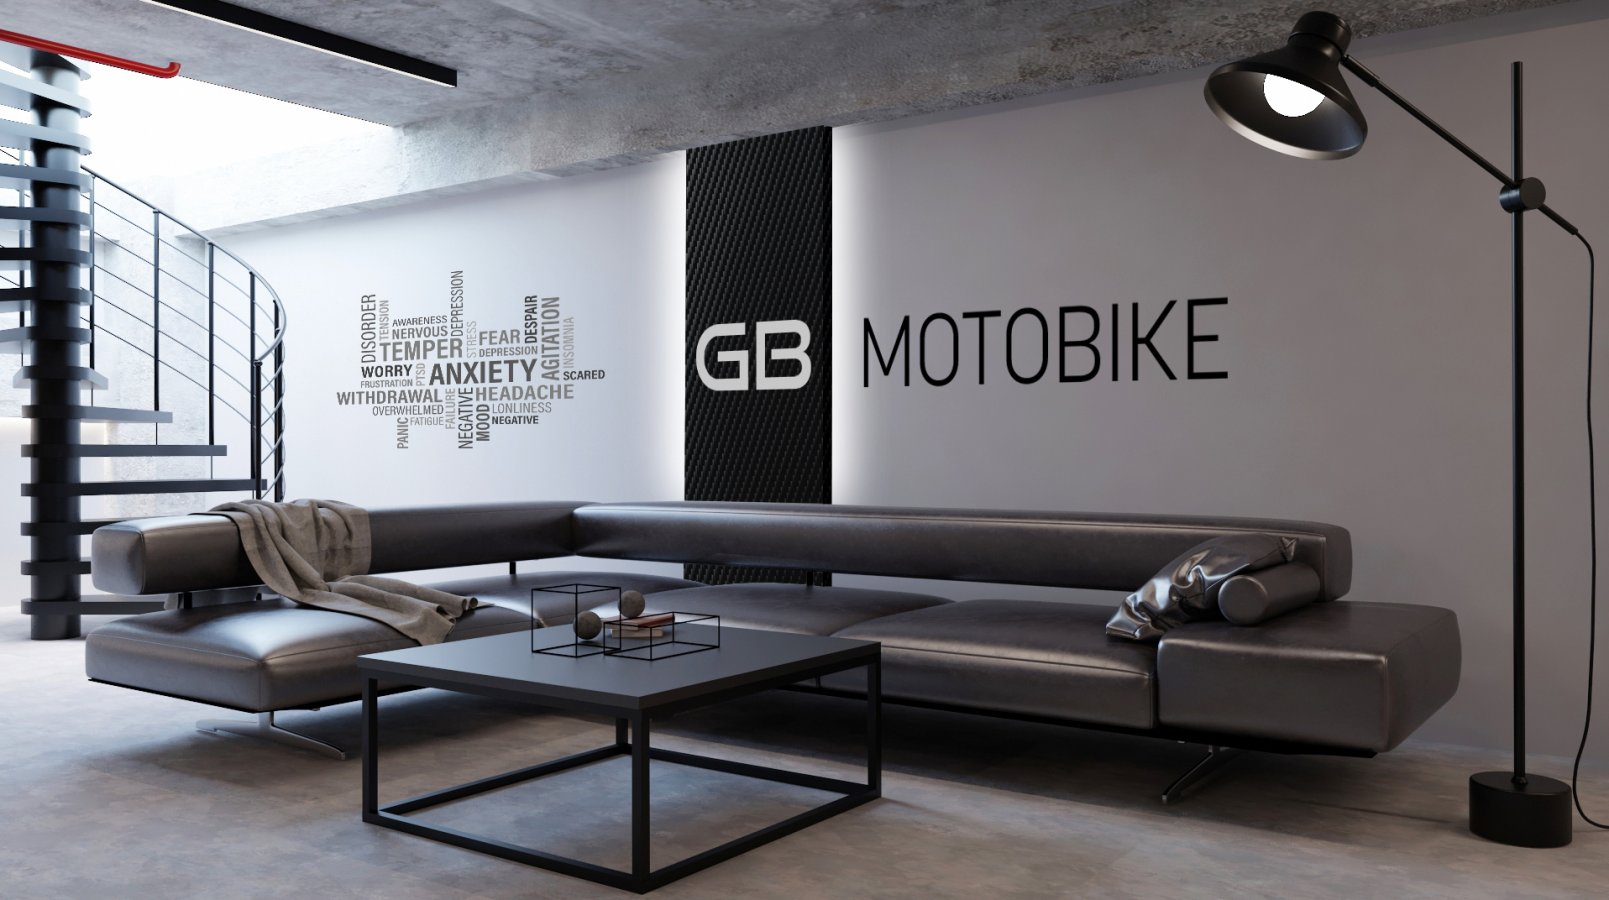 GB Motobike